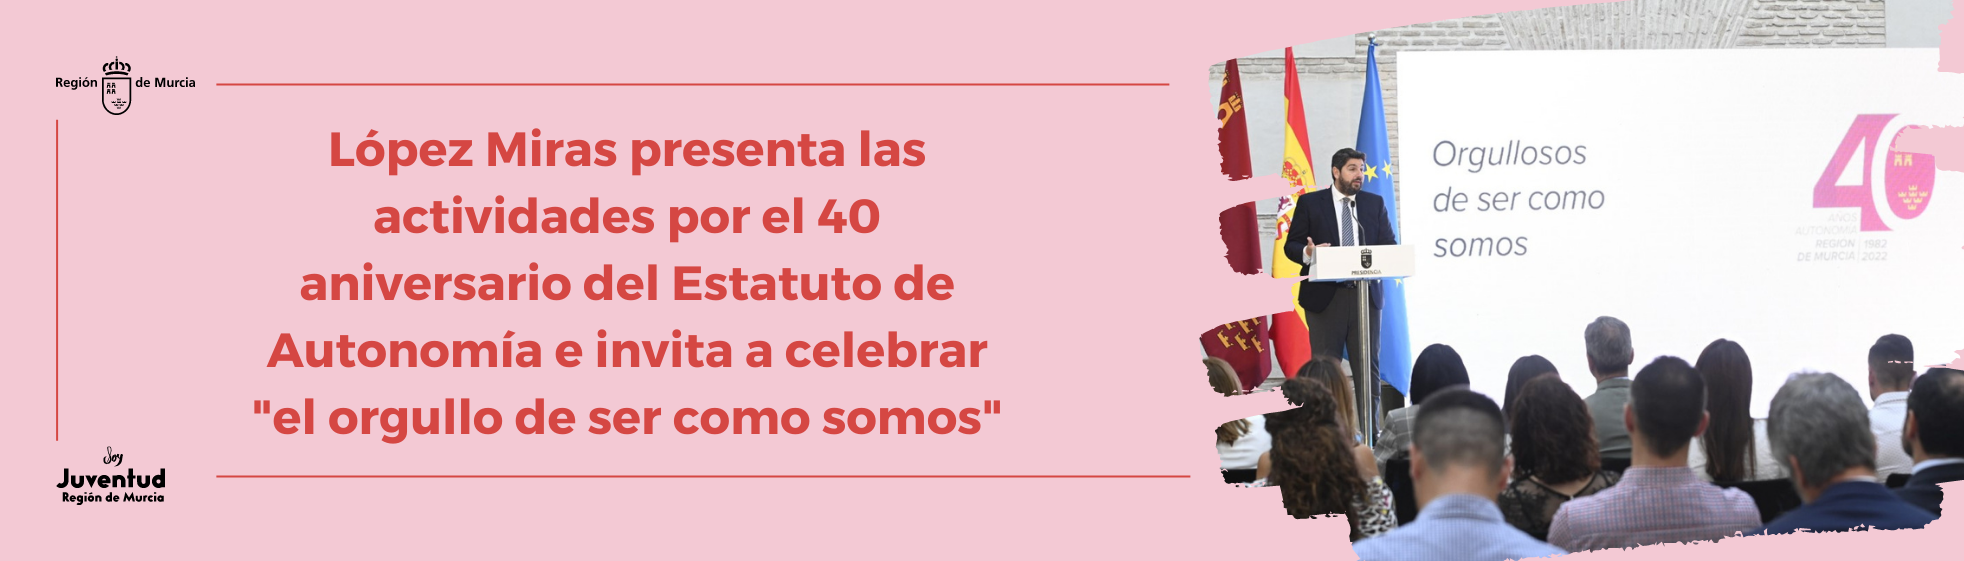 López Miras presenta las actividades por el 40 aniversario del Estatuto de Autonomía e invita a celebrar 